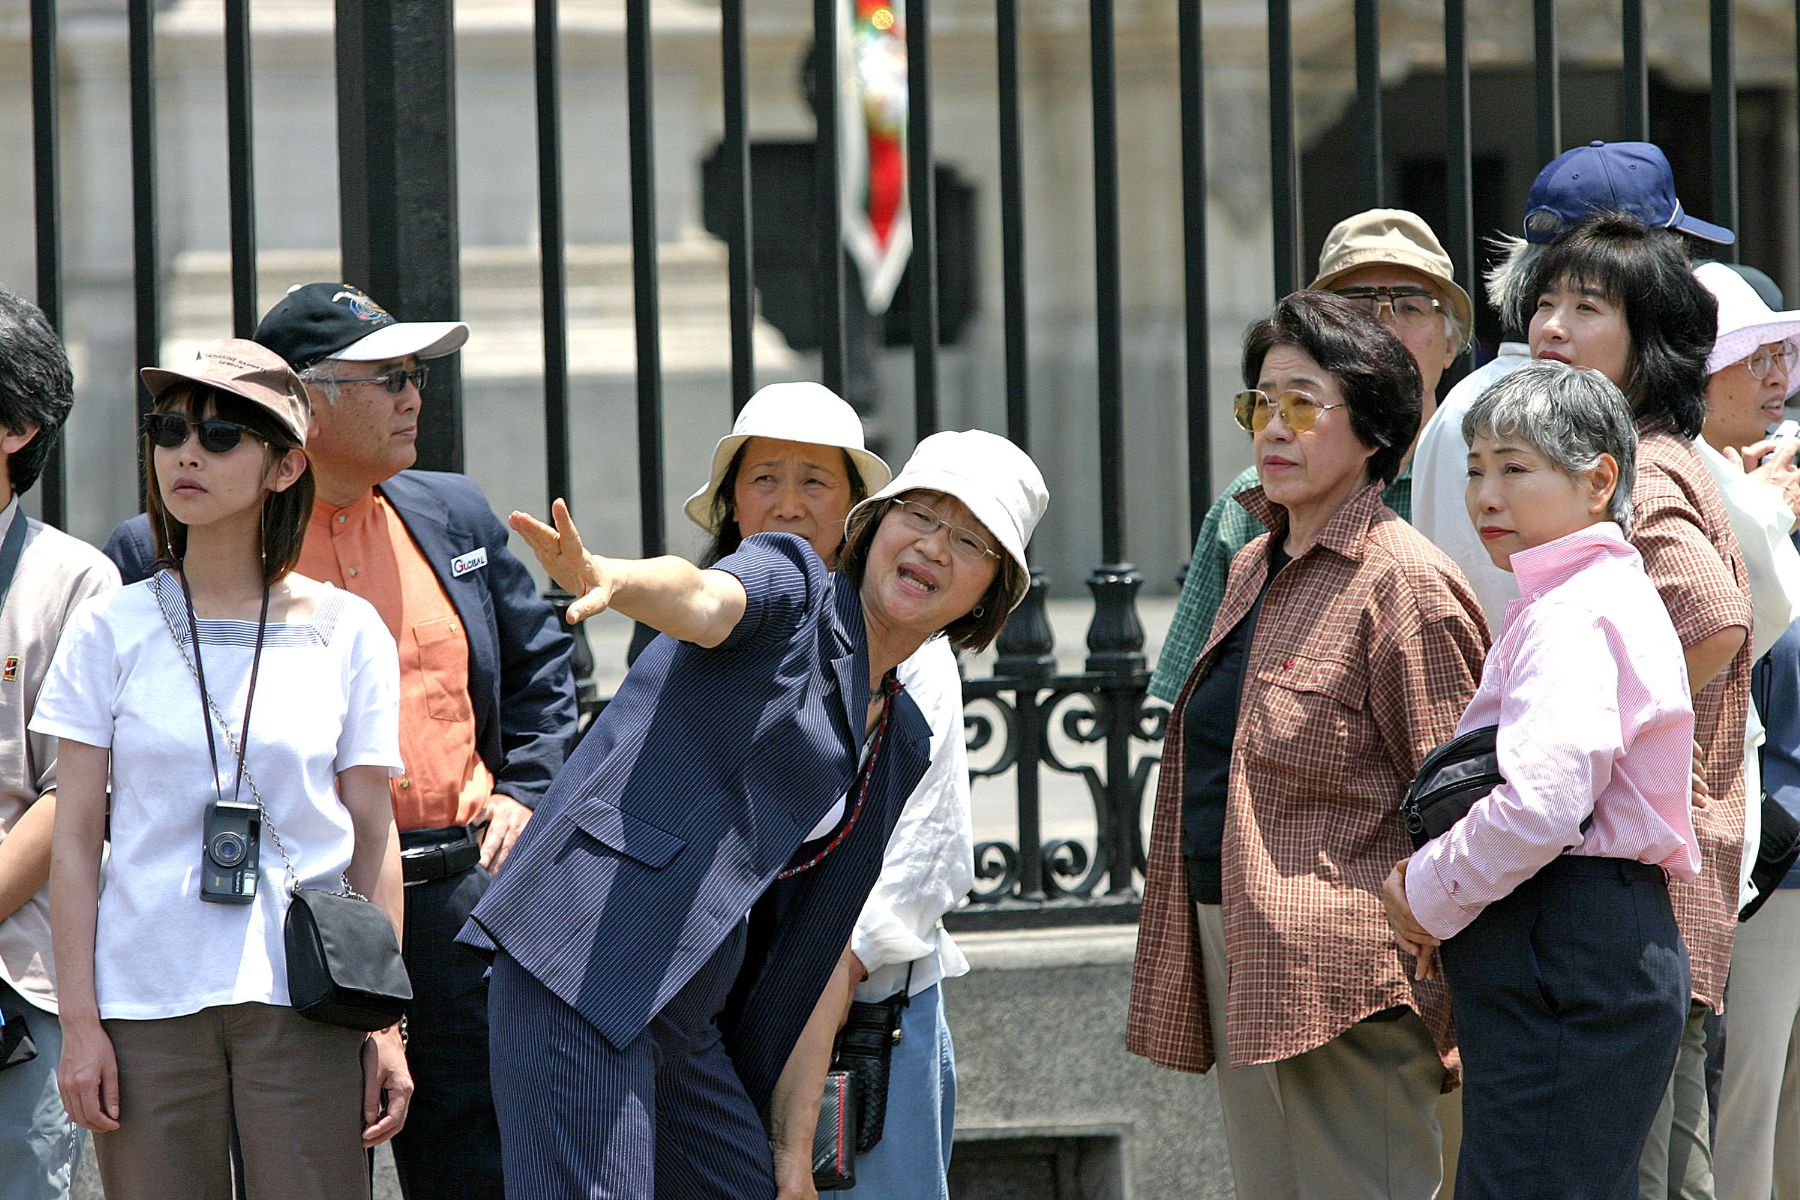 Asian tourists visiting Peru